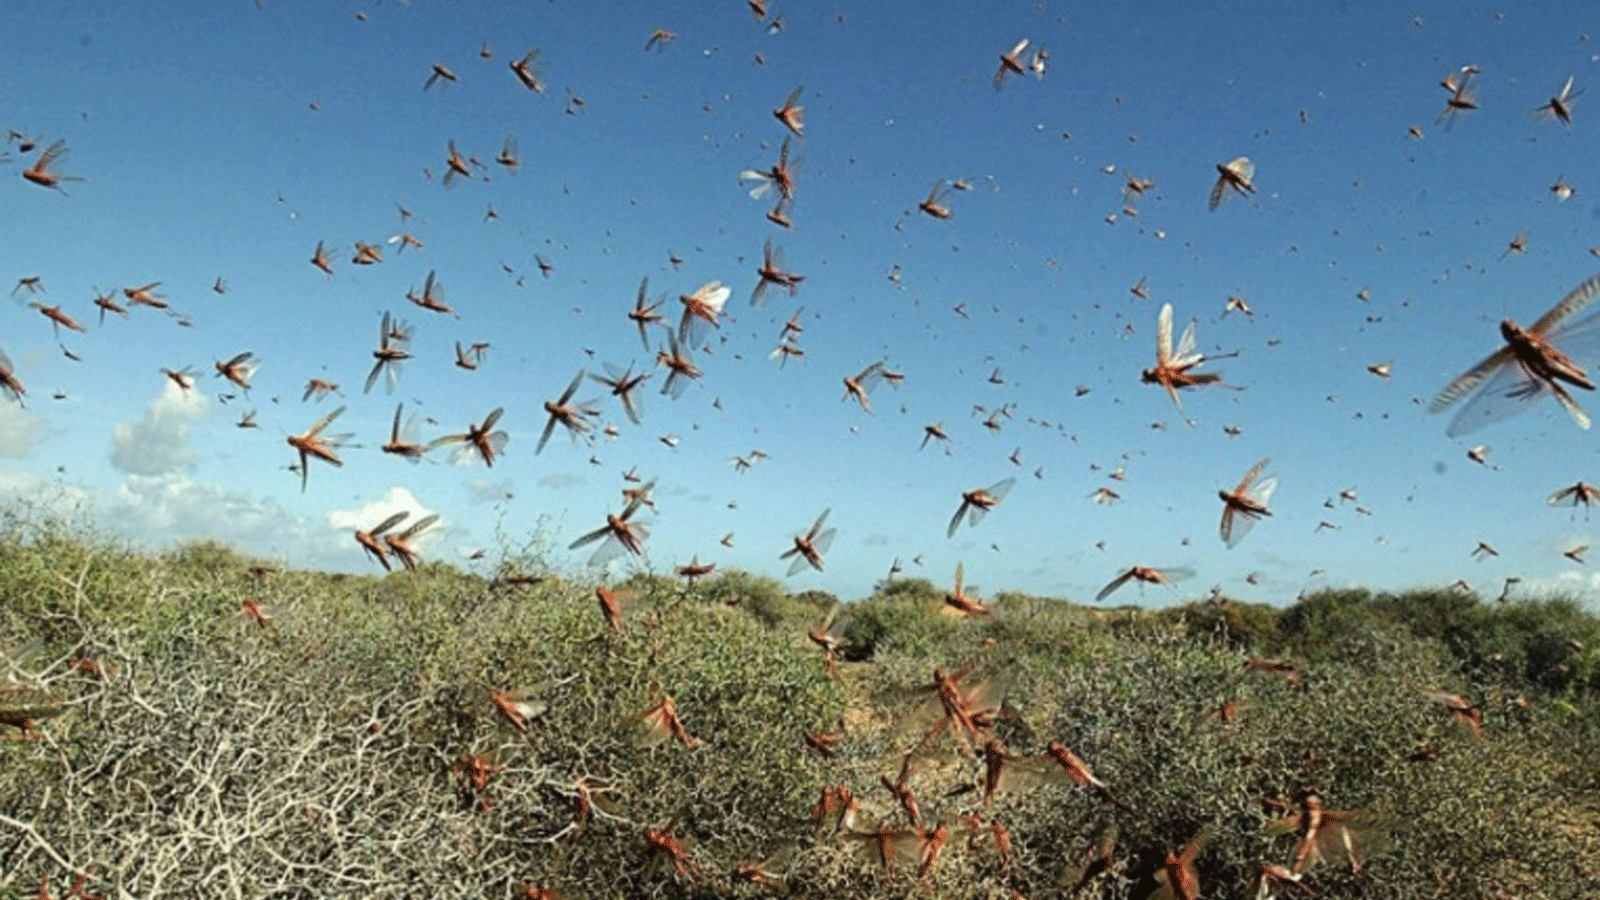 ملايين الحشرات من الجراد تغزو إقليم السند، ثاني أكبر مقاطعة منتجة للقطن في باكستان في حزيران/ يونيو 2019